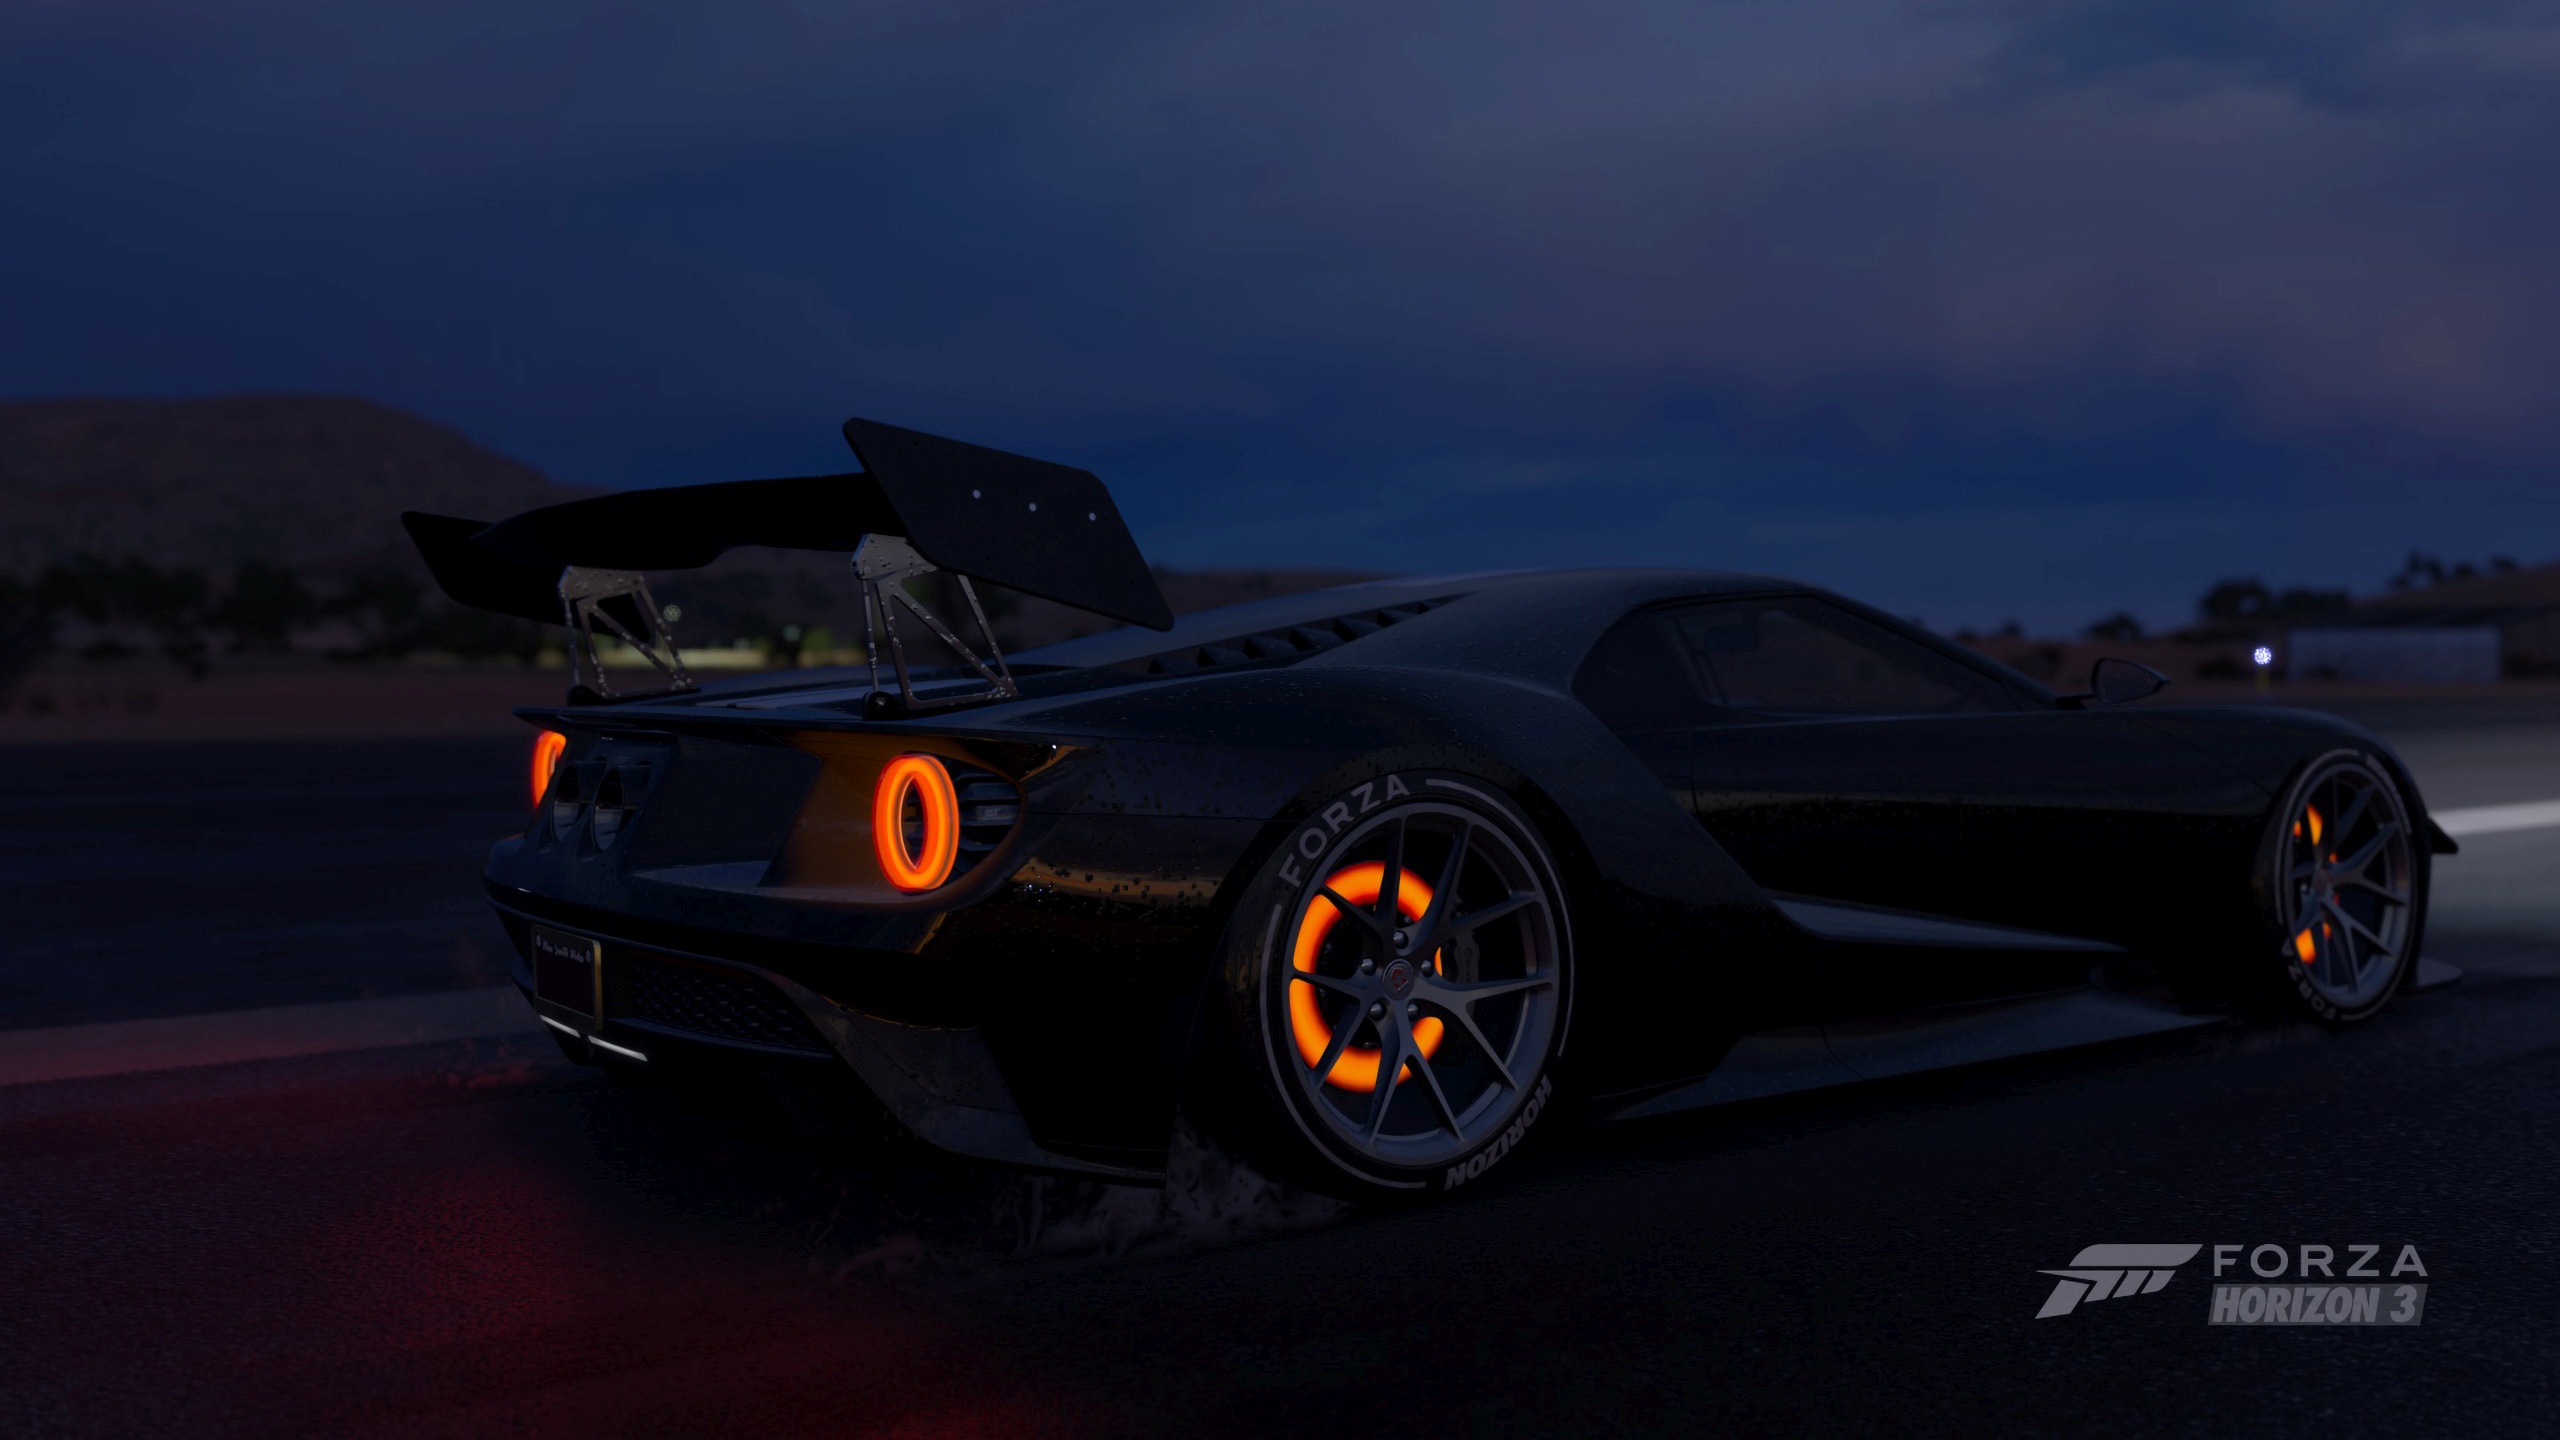 Screen Shot Forza Horizon 3 Ford GT Brake Glow Rain Smoke Night Racing Car Video Games 2560x1440